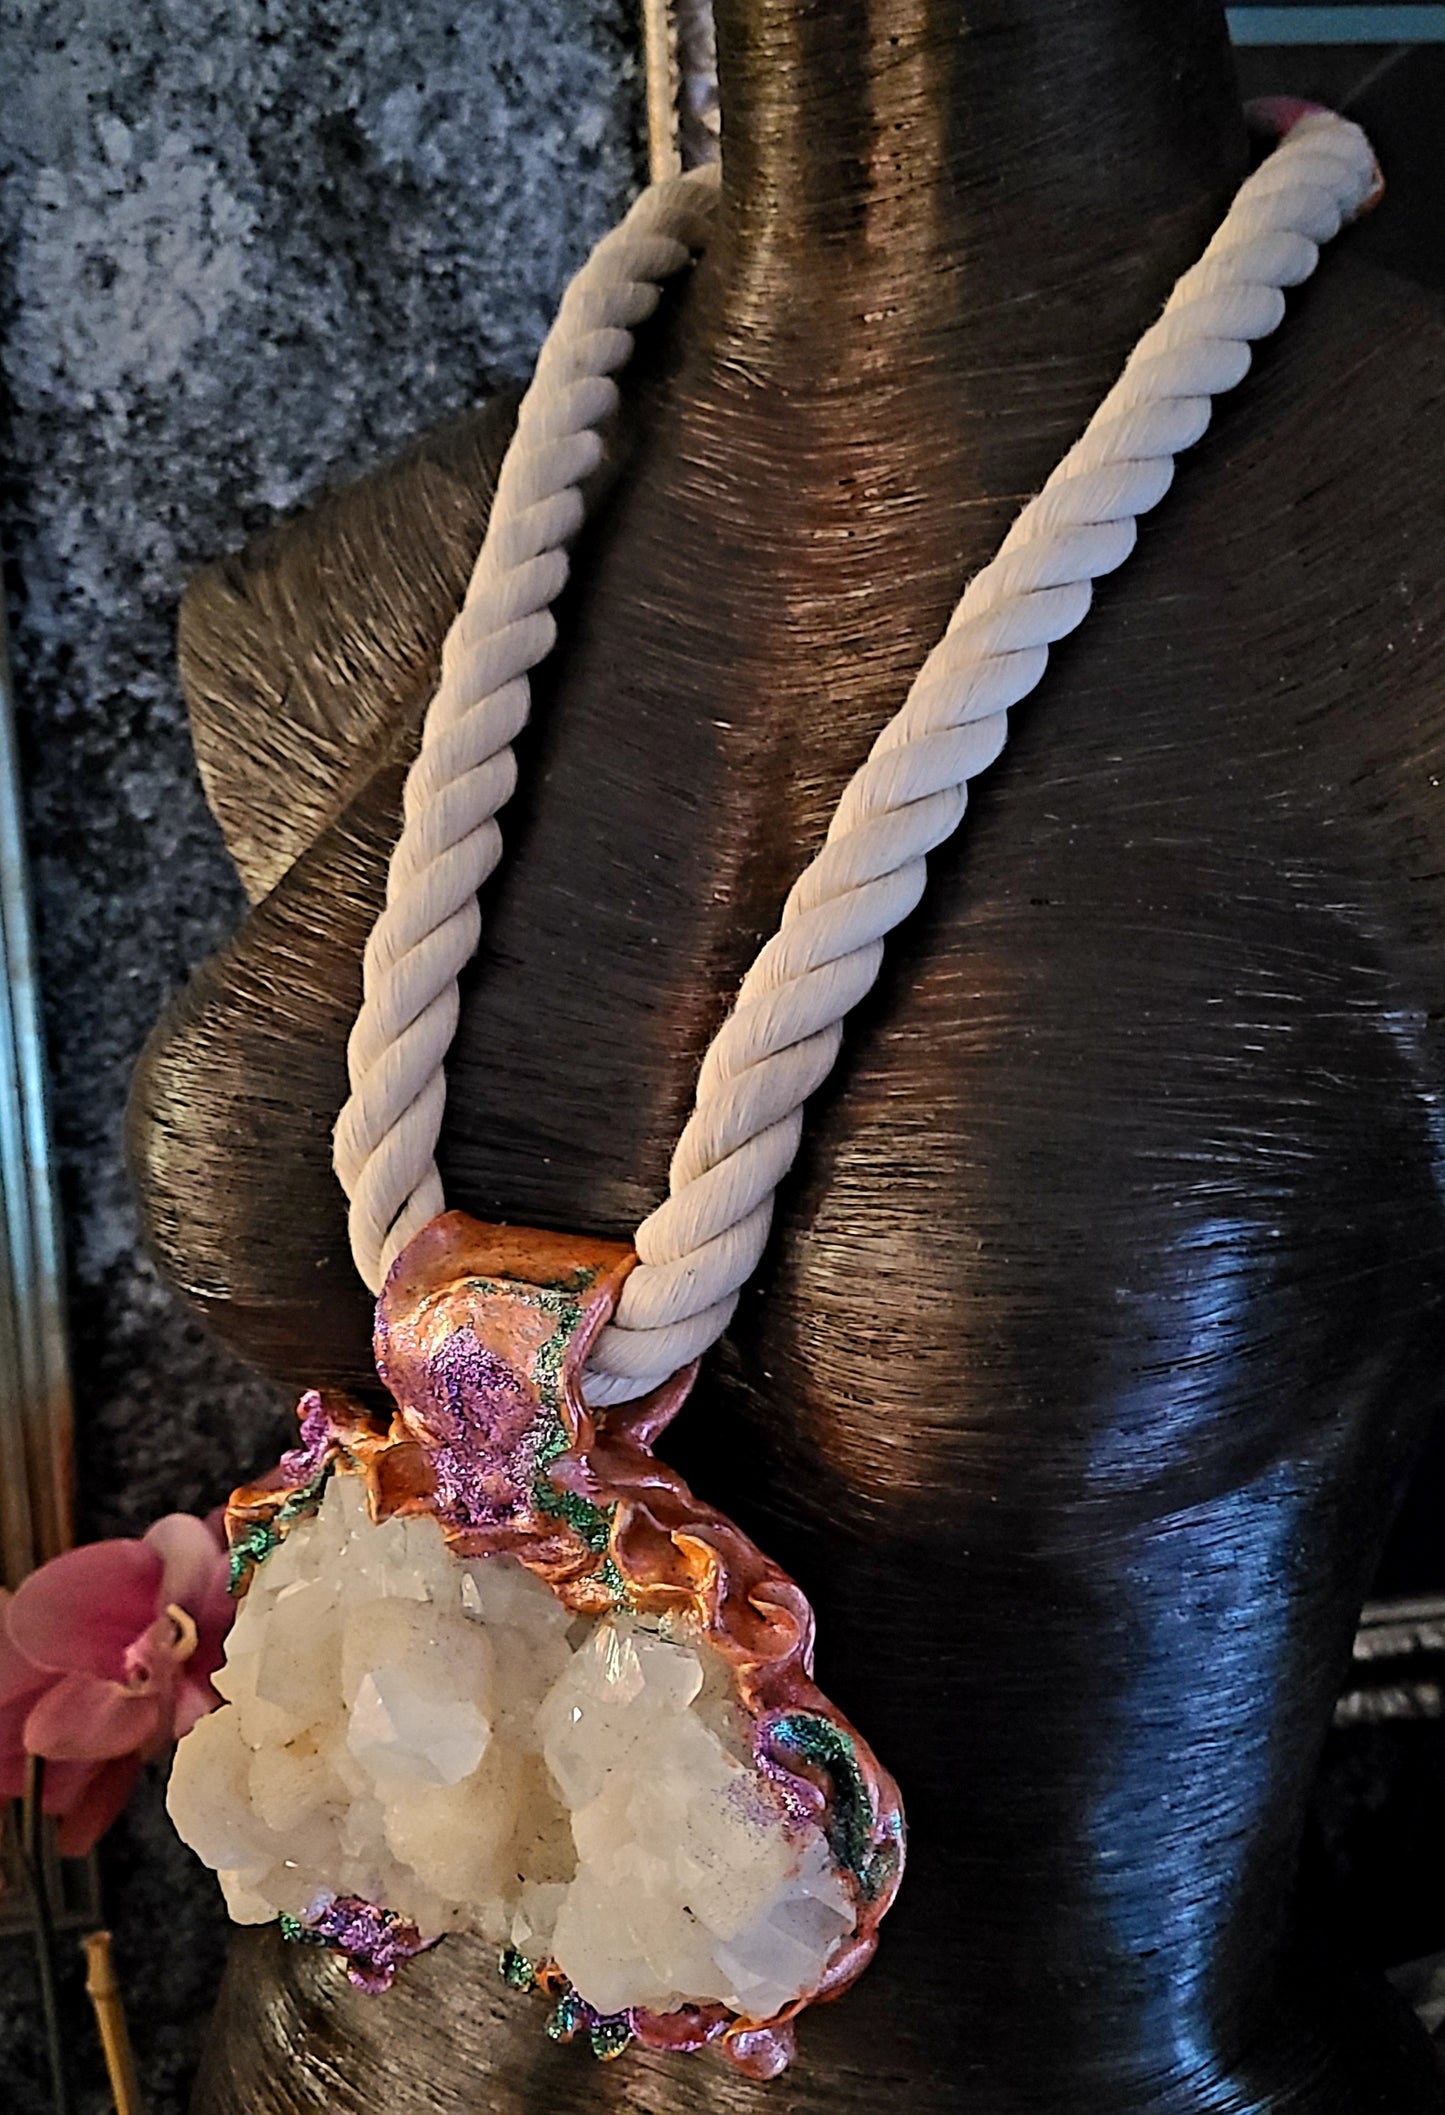 Pendant Gemstone Rough Apophyllite Stilbite Gemmy Crystals, Talisman Sculpted Cotton Rope, Jewelry Rocker Chic